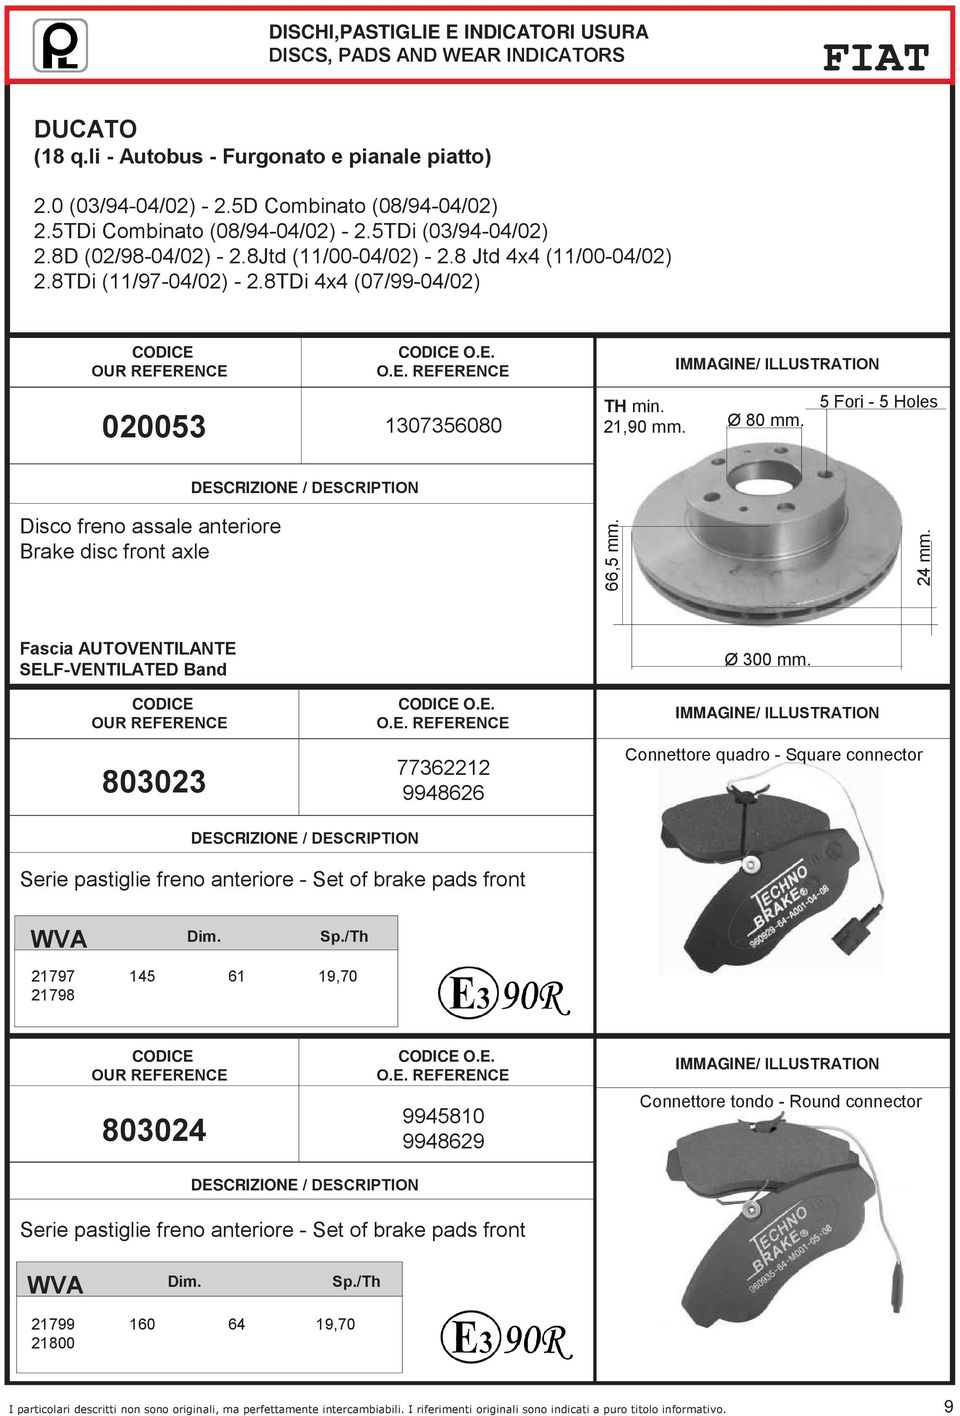 5 Fori - 5 Holes Disco freno assale anteriore Brake disc front axle 66,5 mm. 24 mm. Fascia AUTOVENTILANTE SELF-VENTILATED Band 803023 O.E. 77362212 9948626 Ø 300 mm.